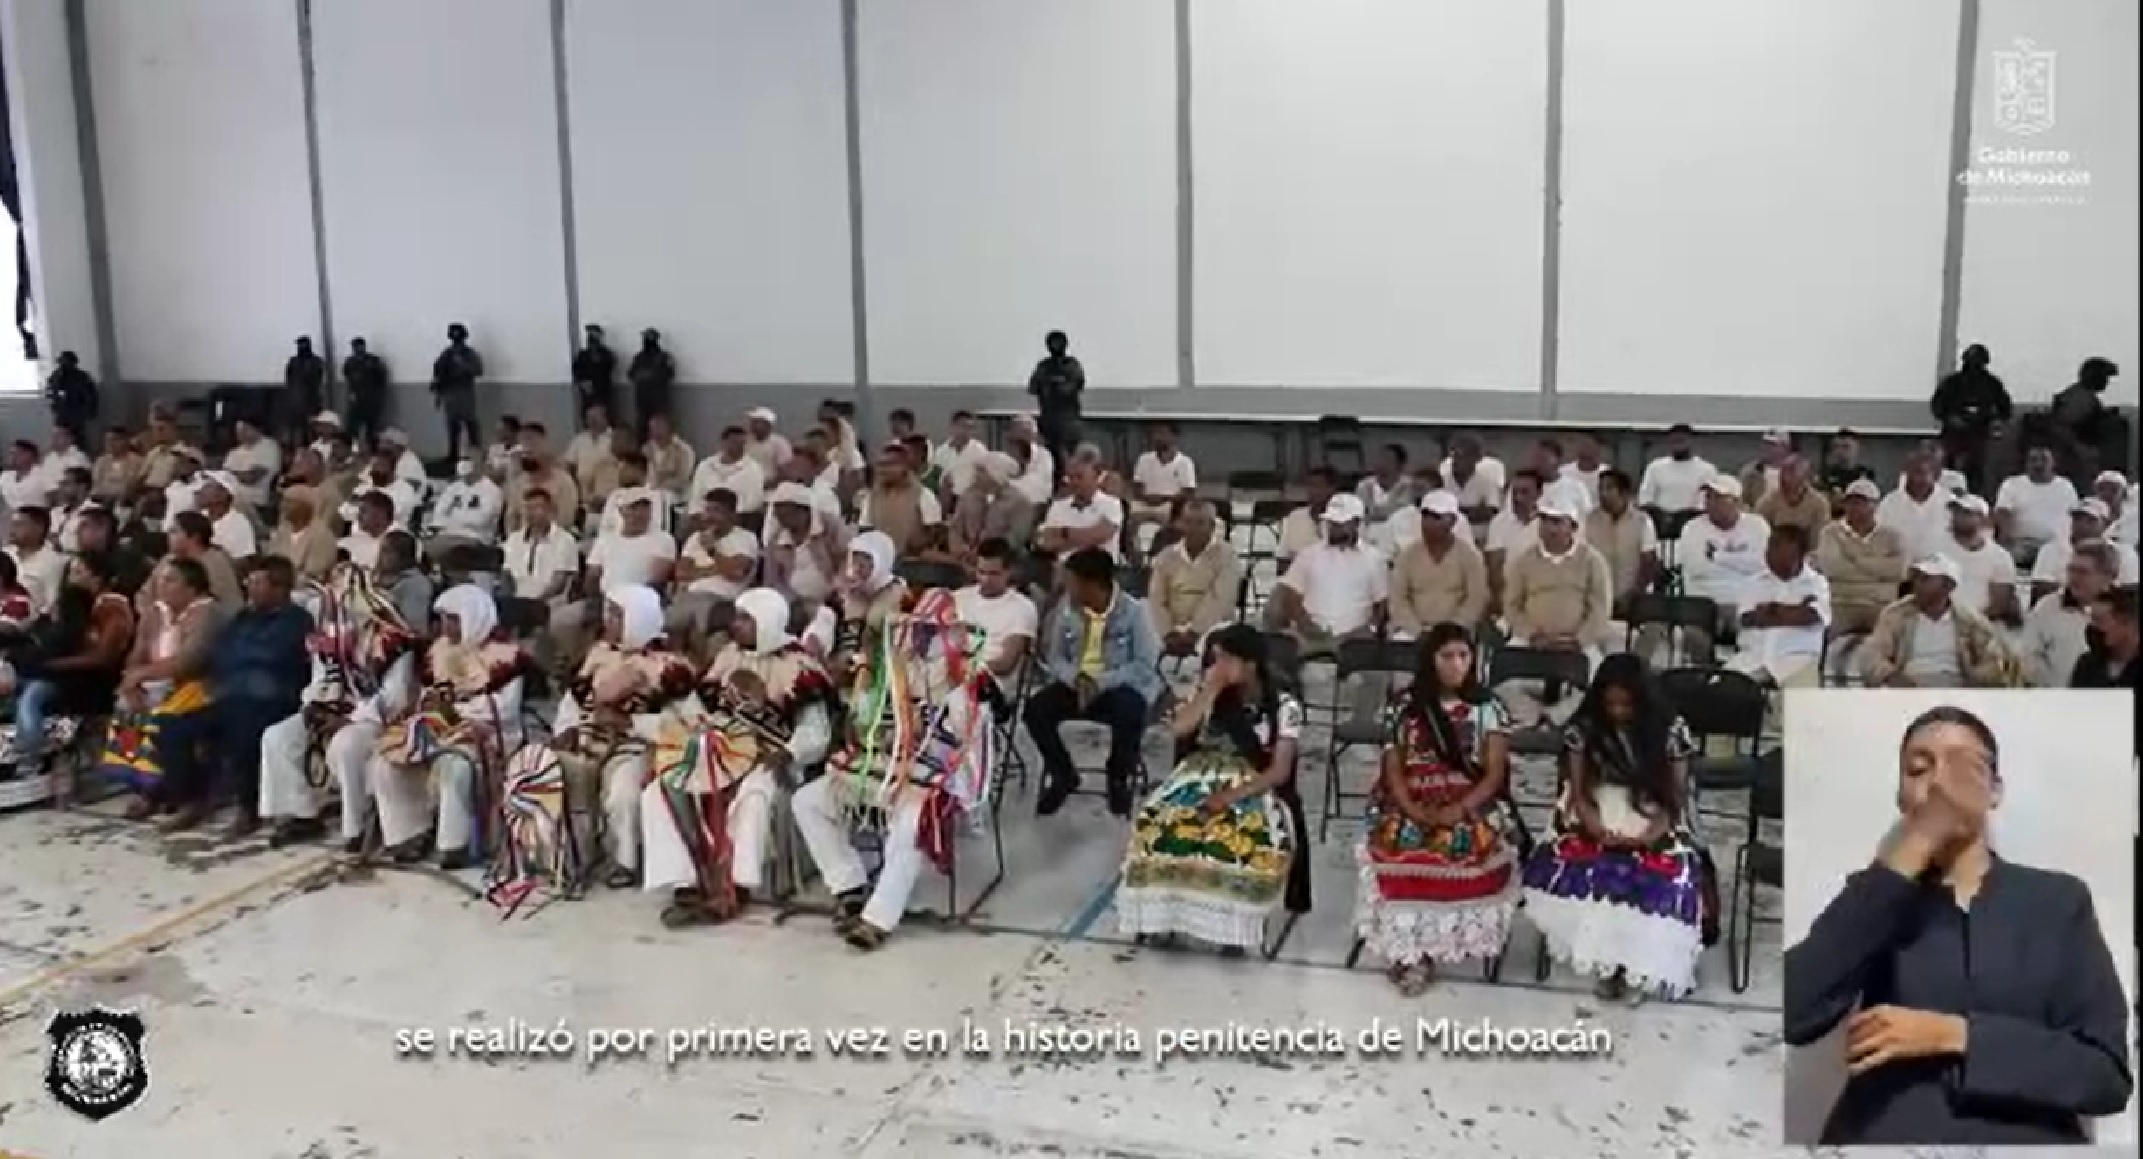 Celebran por primera vez el Corpus Cristi en penal de Michoacán